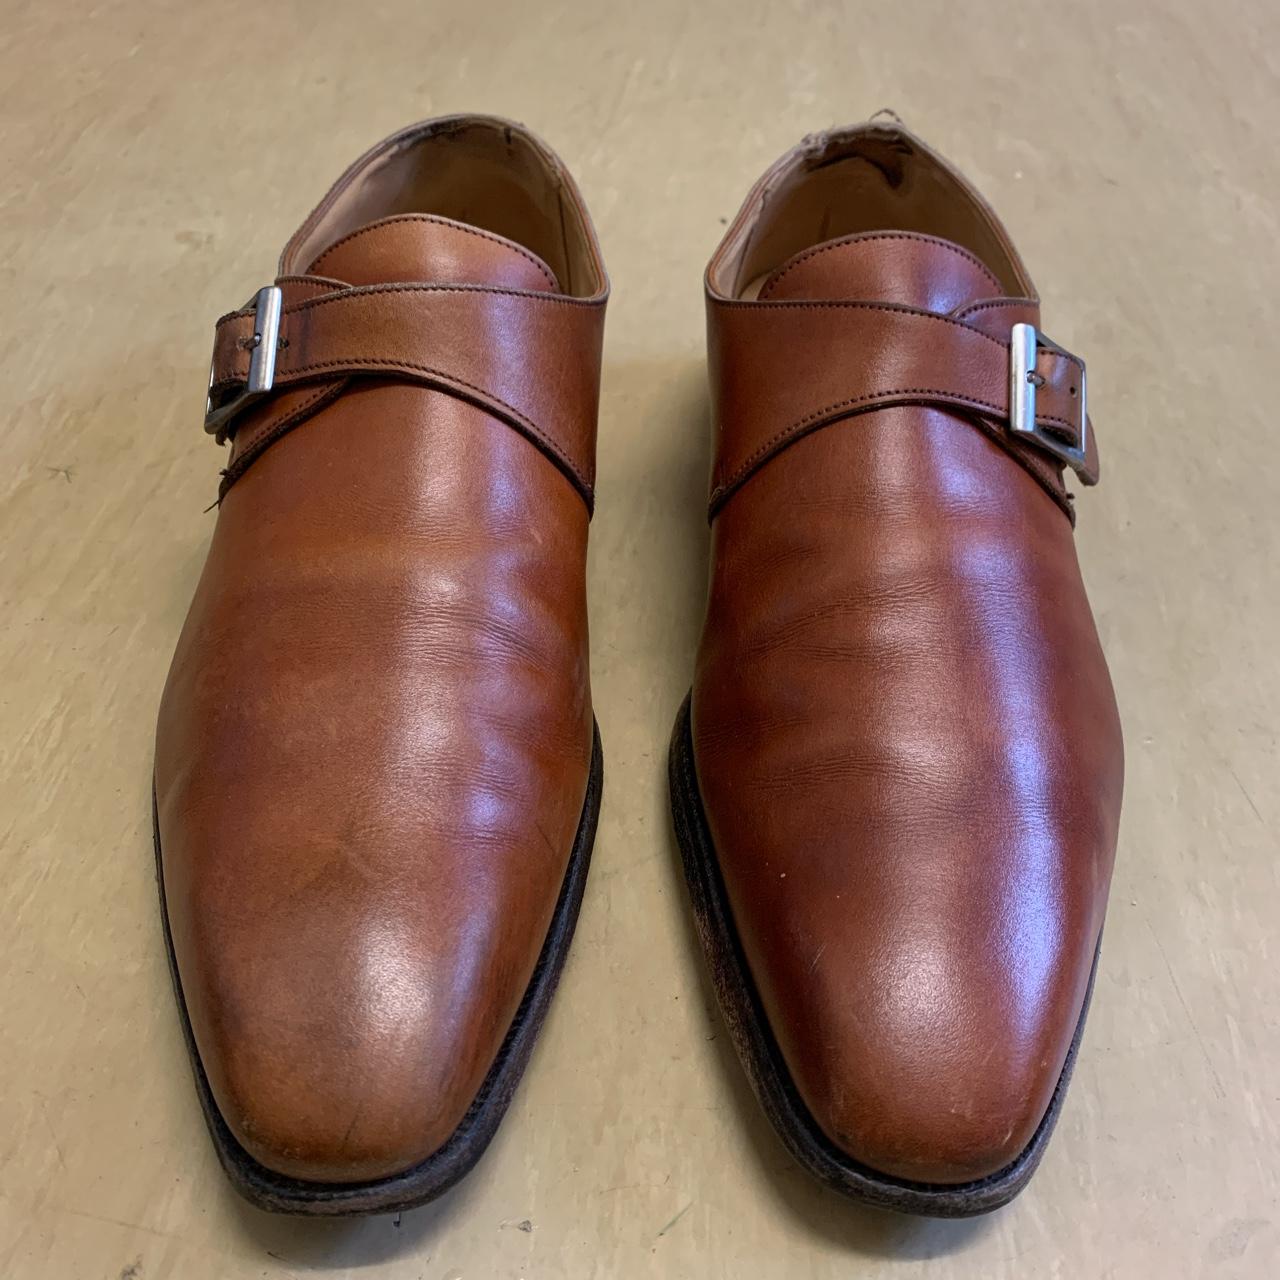 Crockett & Jones almond-toe monk shoes size EUR 42... - Depop